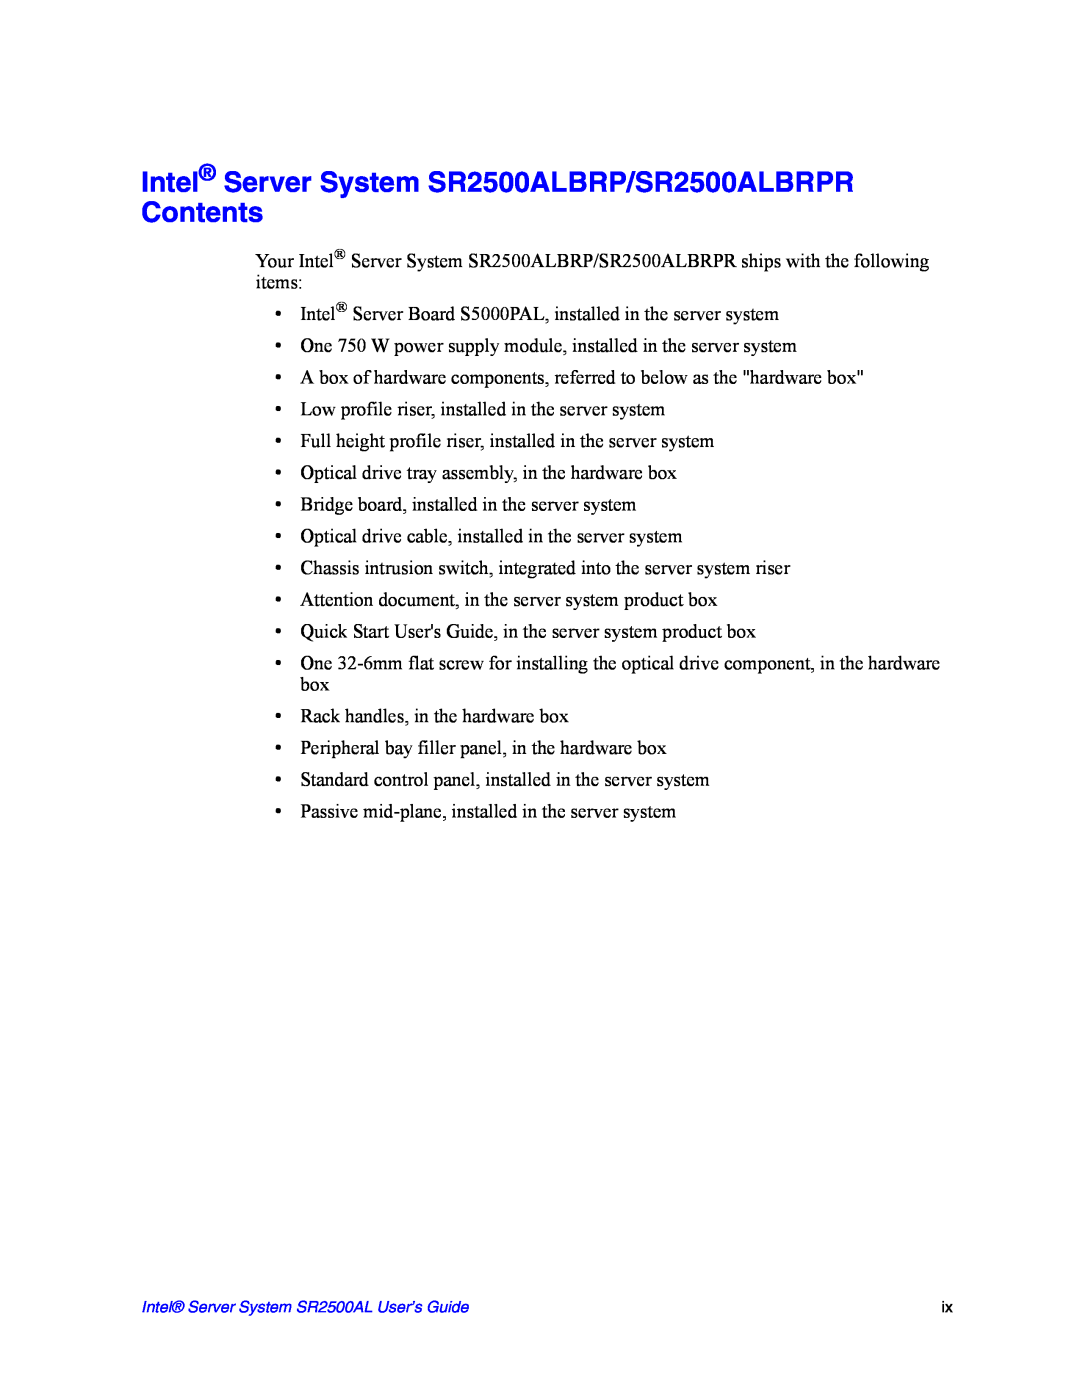 Intel manual Intel Server System SR2500ALBRP/SR2500ALBRPR Contents 